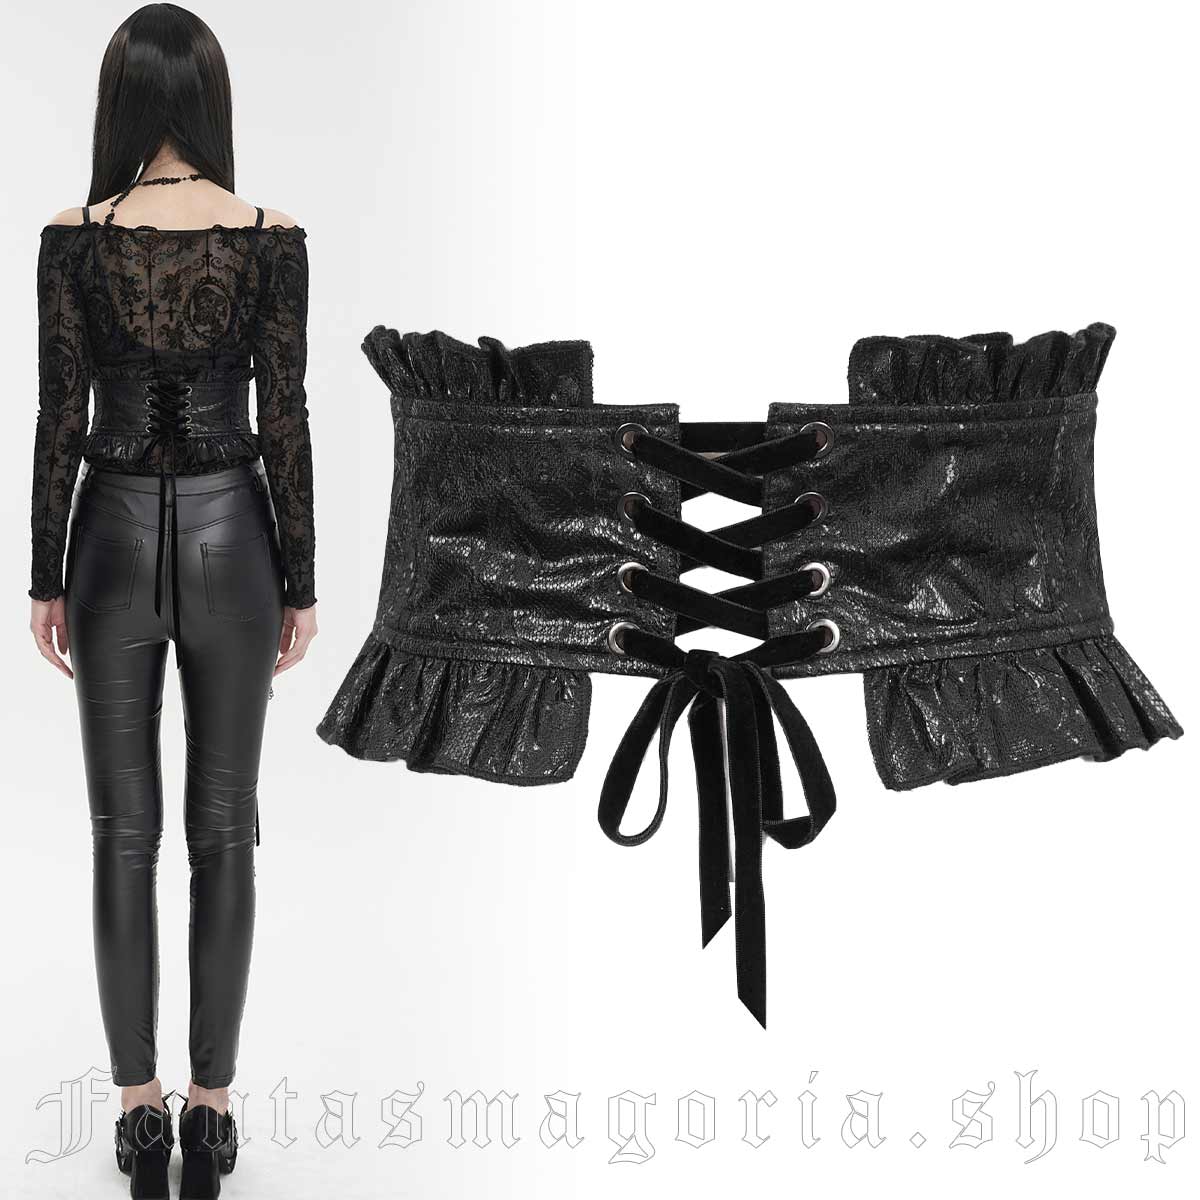 Hot women's black leather corset belt lace up deco faux leather